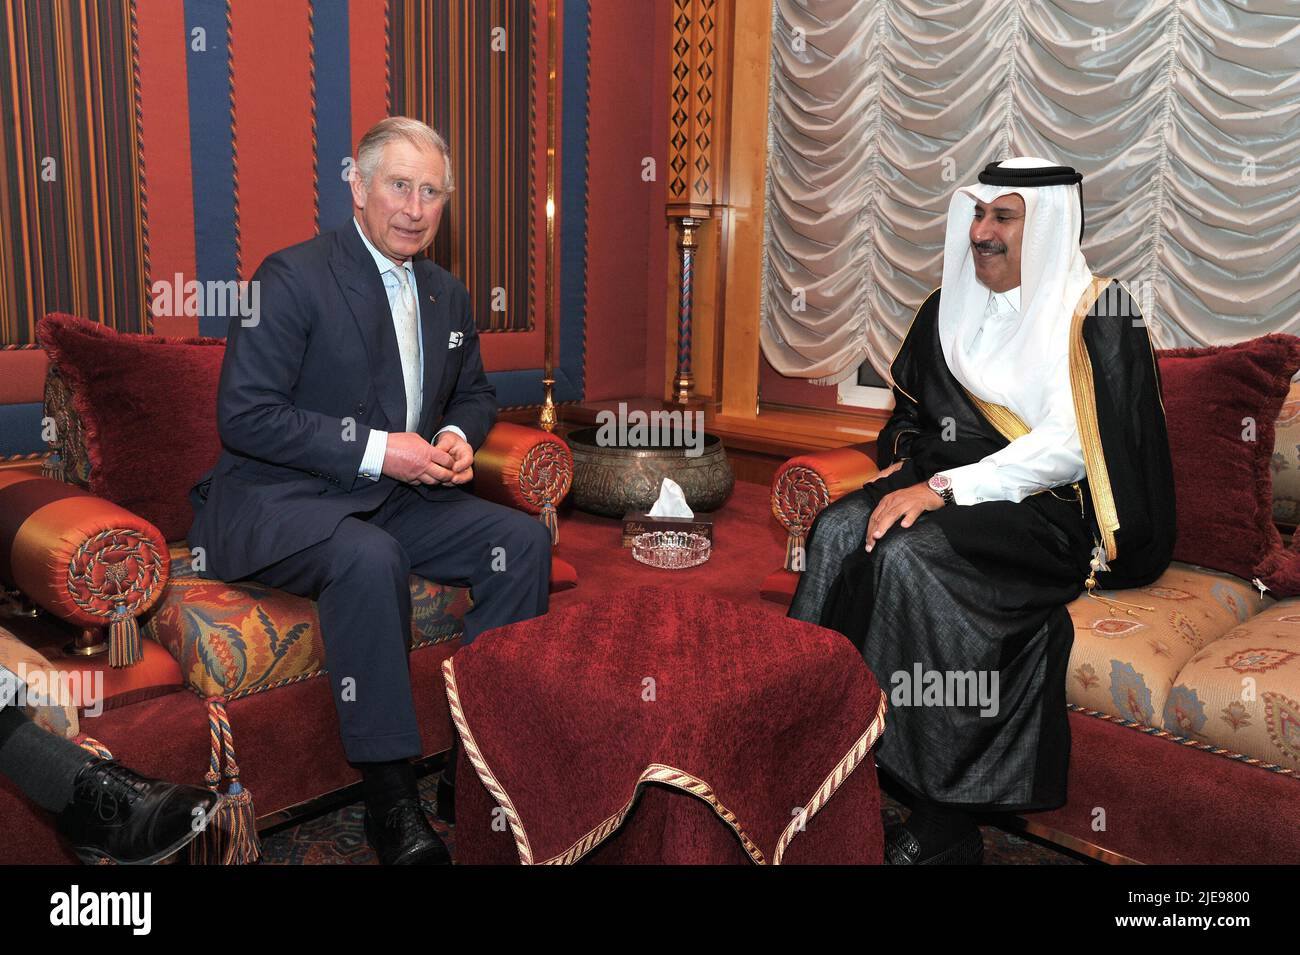 Photo du dossier datée du 13/3/2013 du Prince de Galles avec le Premier ministre qatari Sheikh Hamad Bin Jassim al Thani, à sa résidence à l'extérieur de Doha, au Qatar. Le Prince a accepté d'importants dons en espèces totalisant trois millions d'euros de l'ancien Premier ministre qatari, a rapporté le Sunday Times. Le journal a prétendu que le prince acceptait personnellement les dons en espèces pour son organisme de bienfaisance le Fonds de charité du prince de Galles (PWCF) entre 2011 et 2015 de Sheikh Hamad bin Jassim, qui était premier ministre du Qatar entre 2007 et 2013. Date de publication : dimanche 26 juin 2022. Banque D'Images